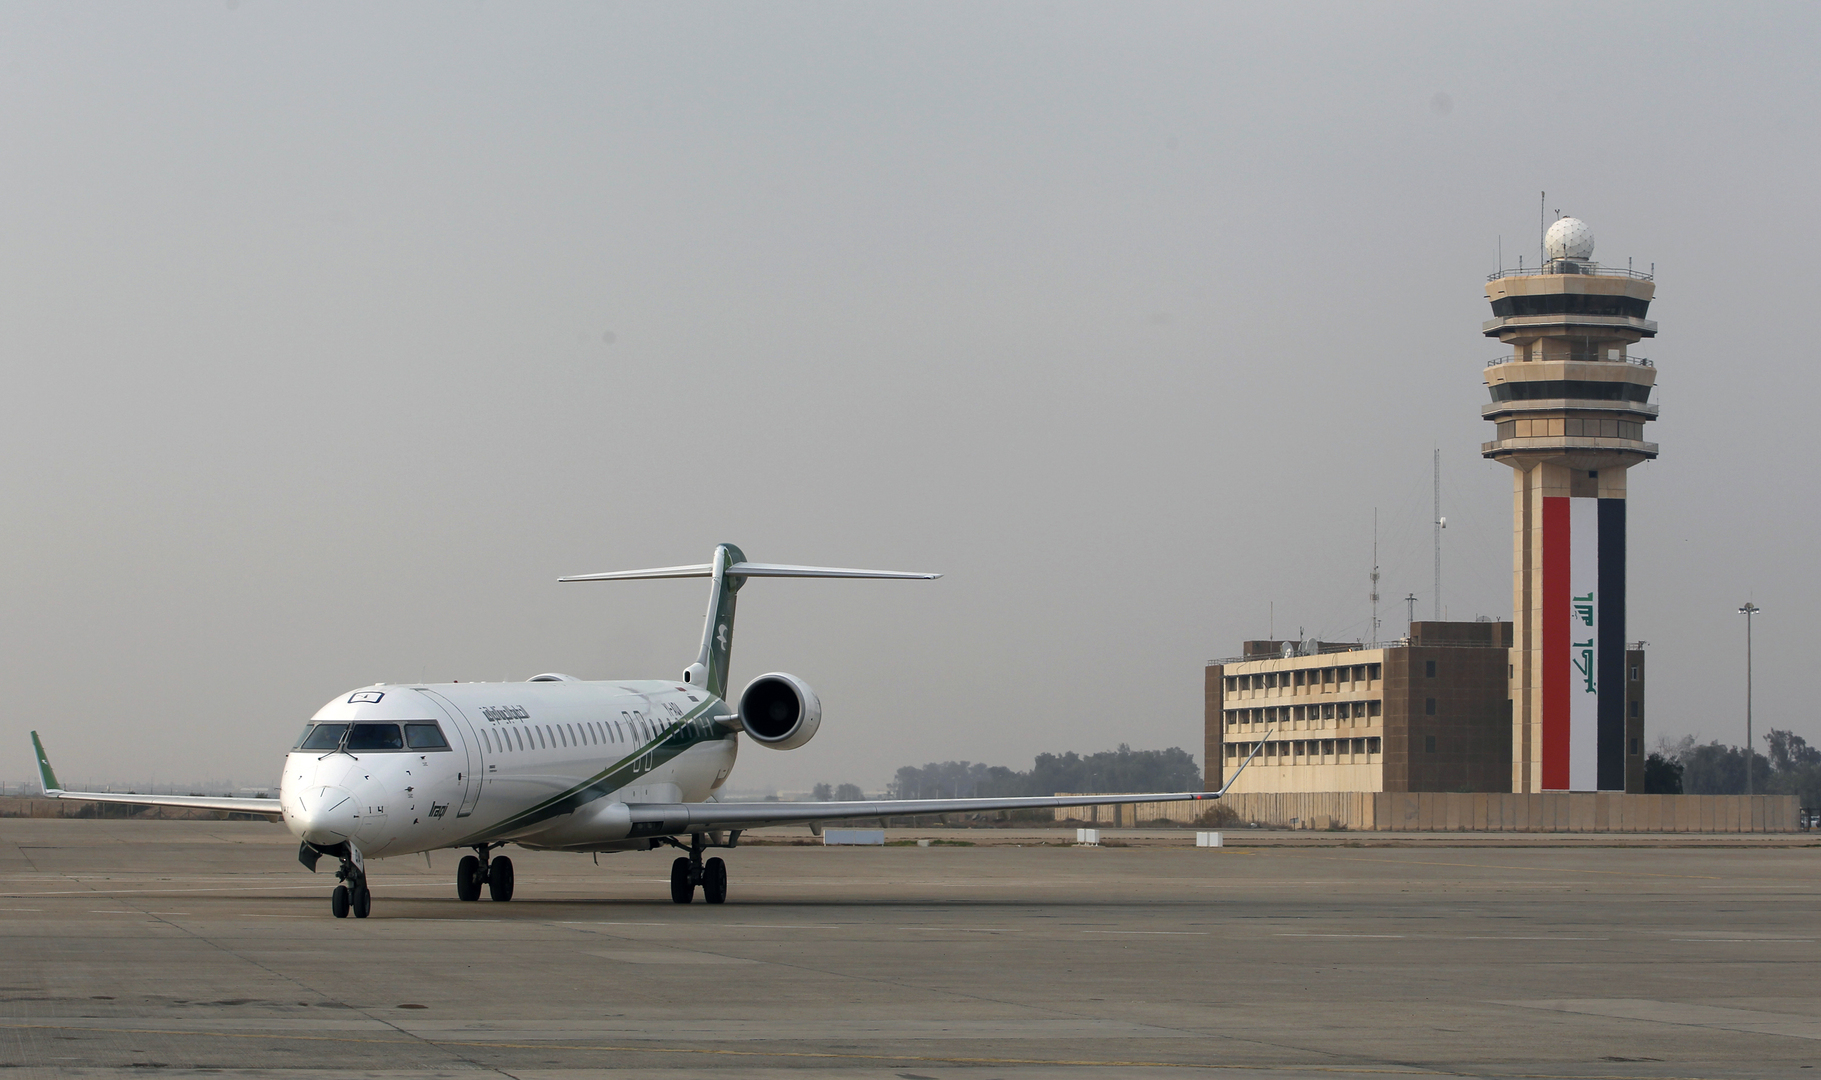 السلطات العراقية: حركة الطيران في مطار بغداد الدولي طبيعية